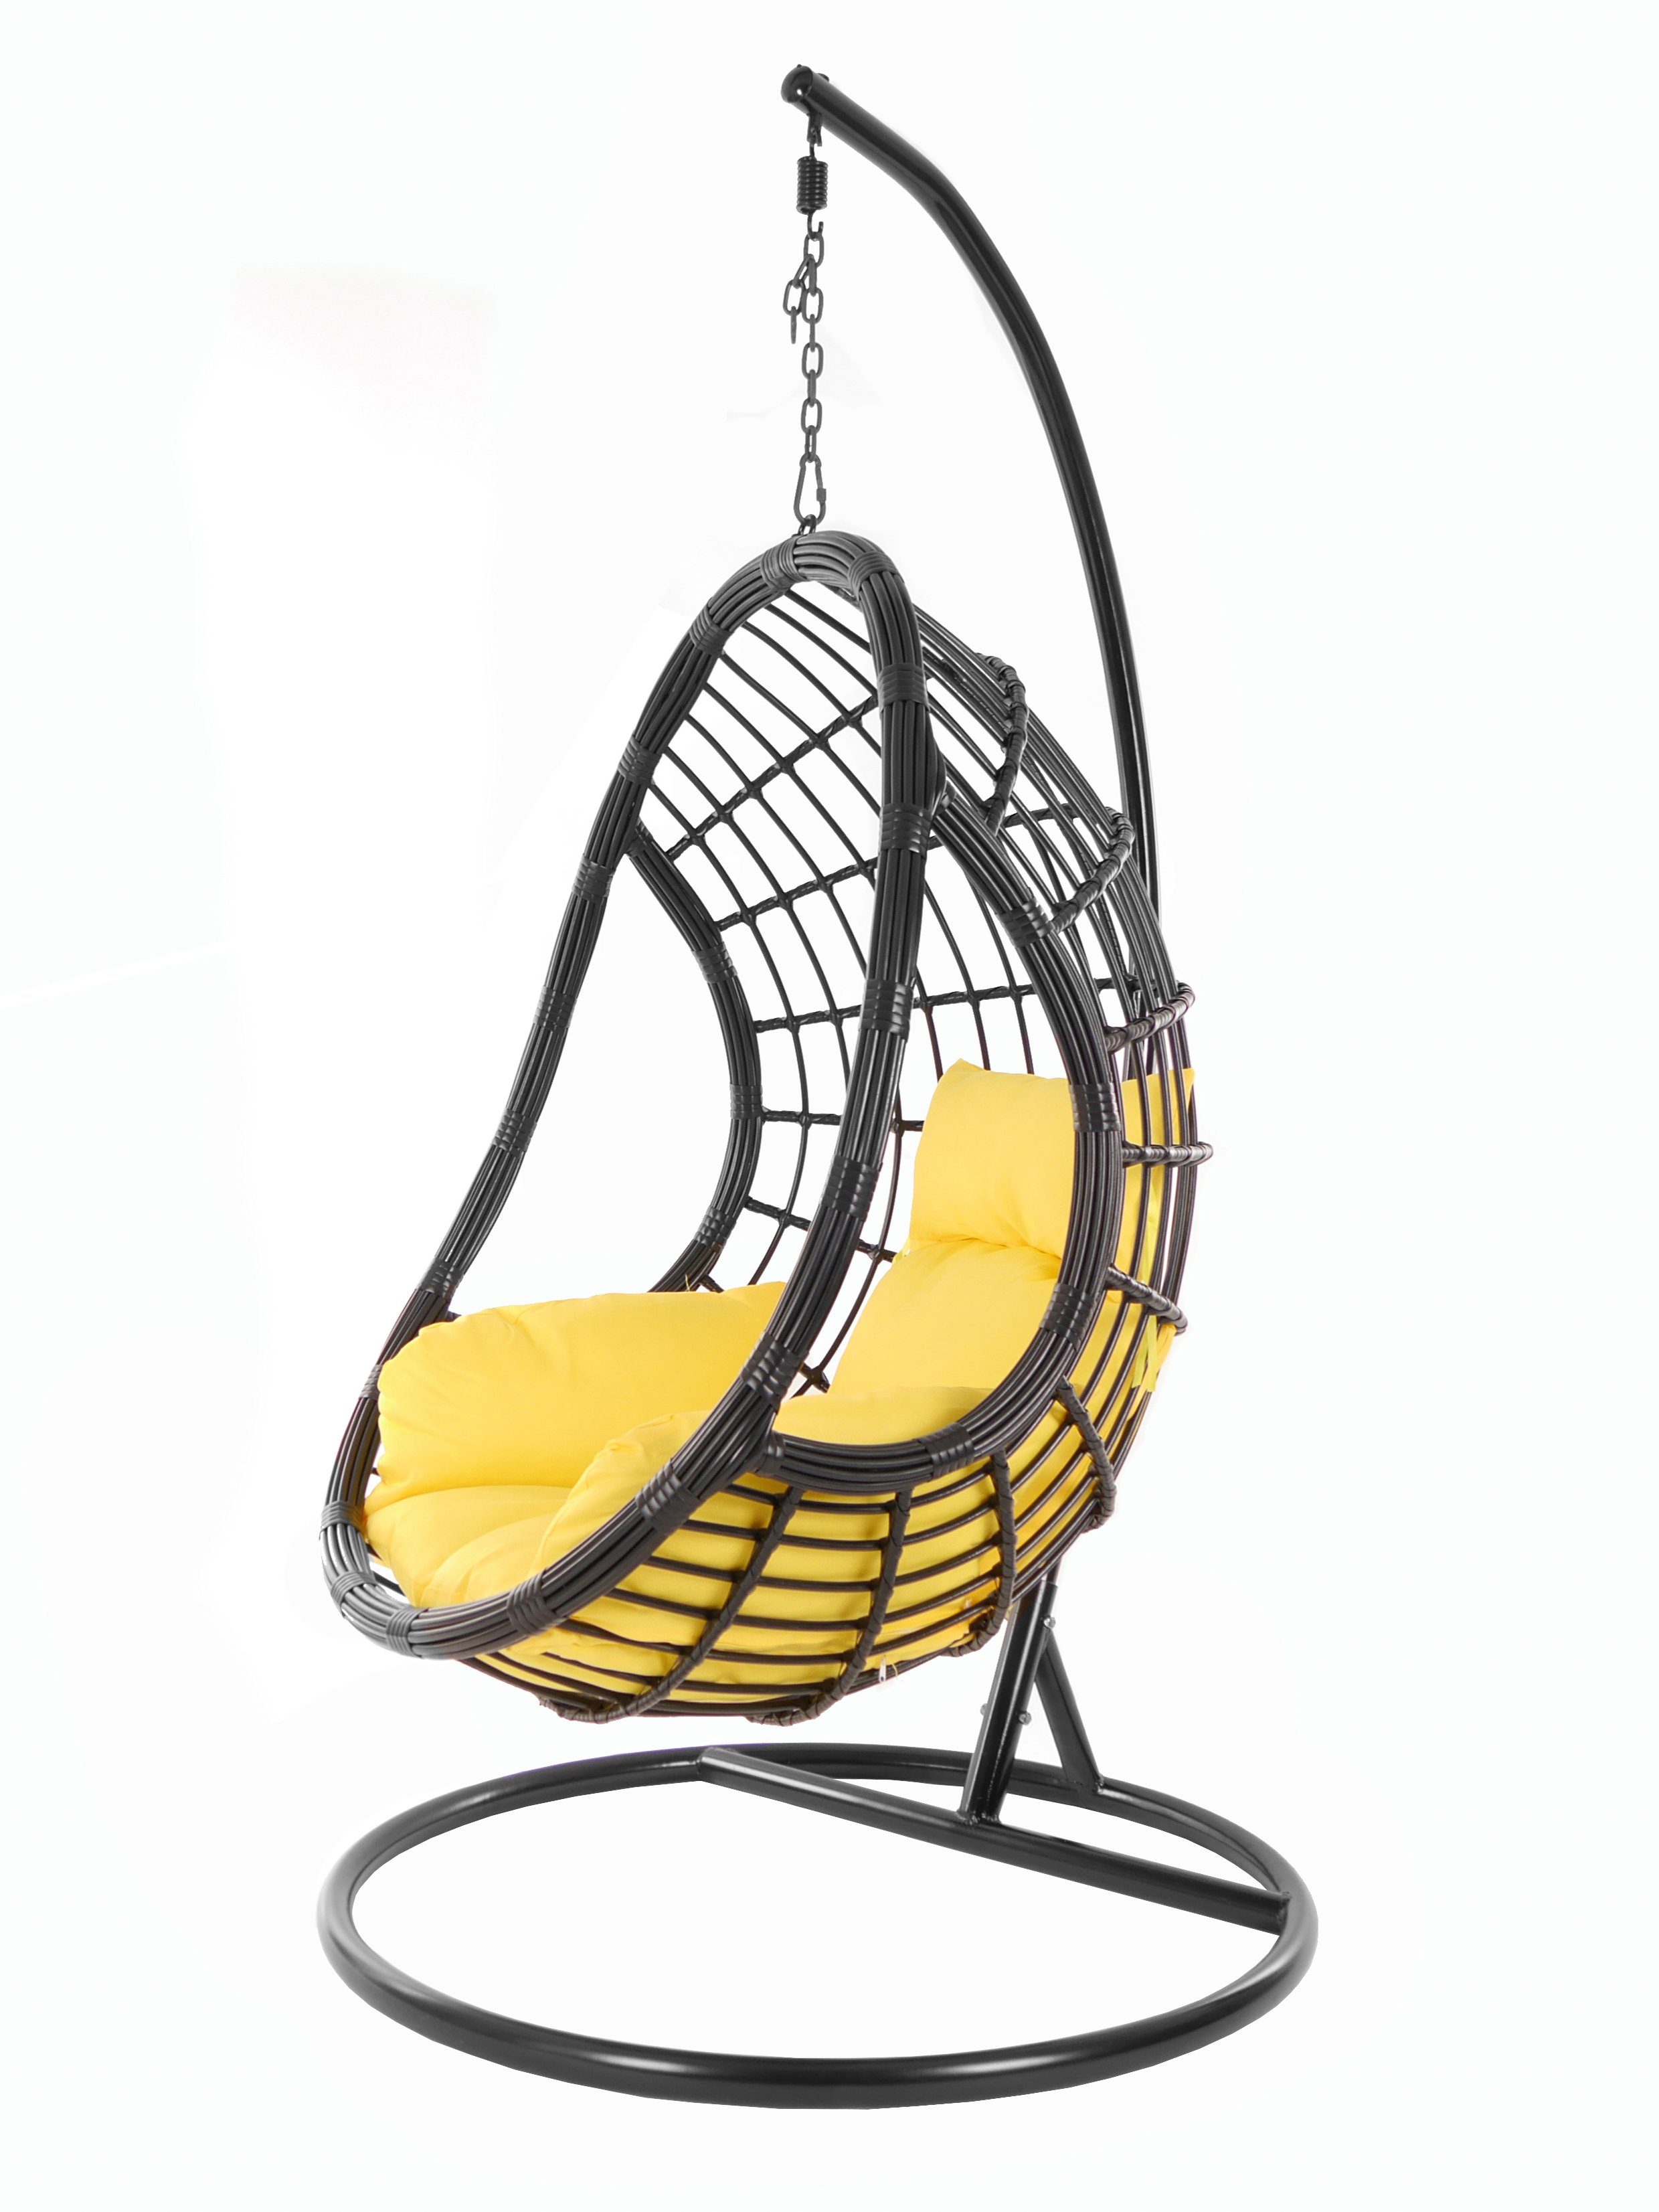 KIDEO Hängesessel PALMANOVA Swing Gestell Chair, Nest-Kissen pineapple) black, (2200 Kissen, Hängesessel gelb Schwebesessel, und mit